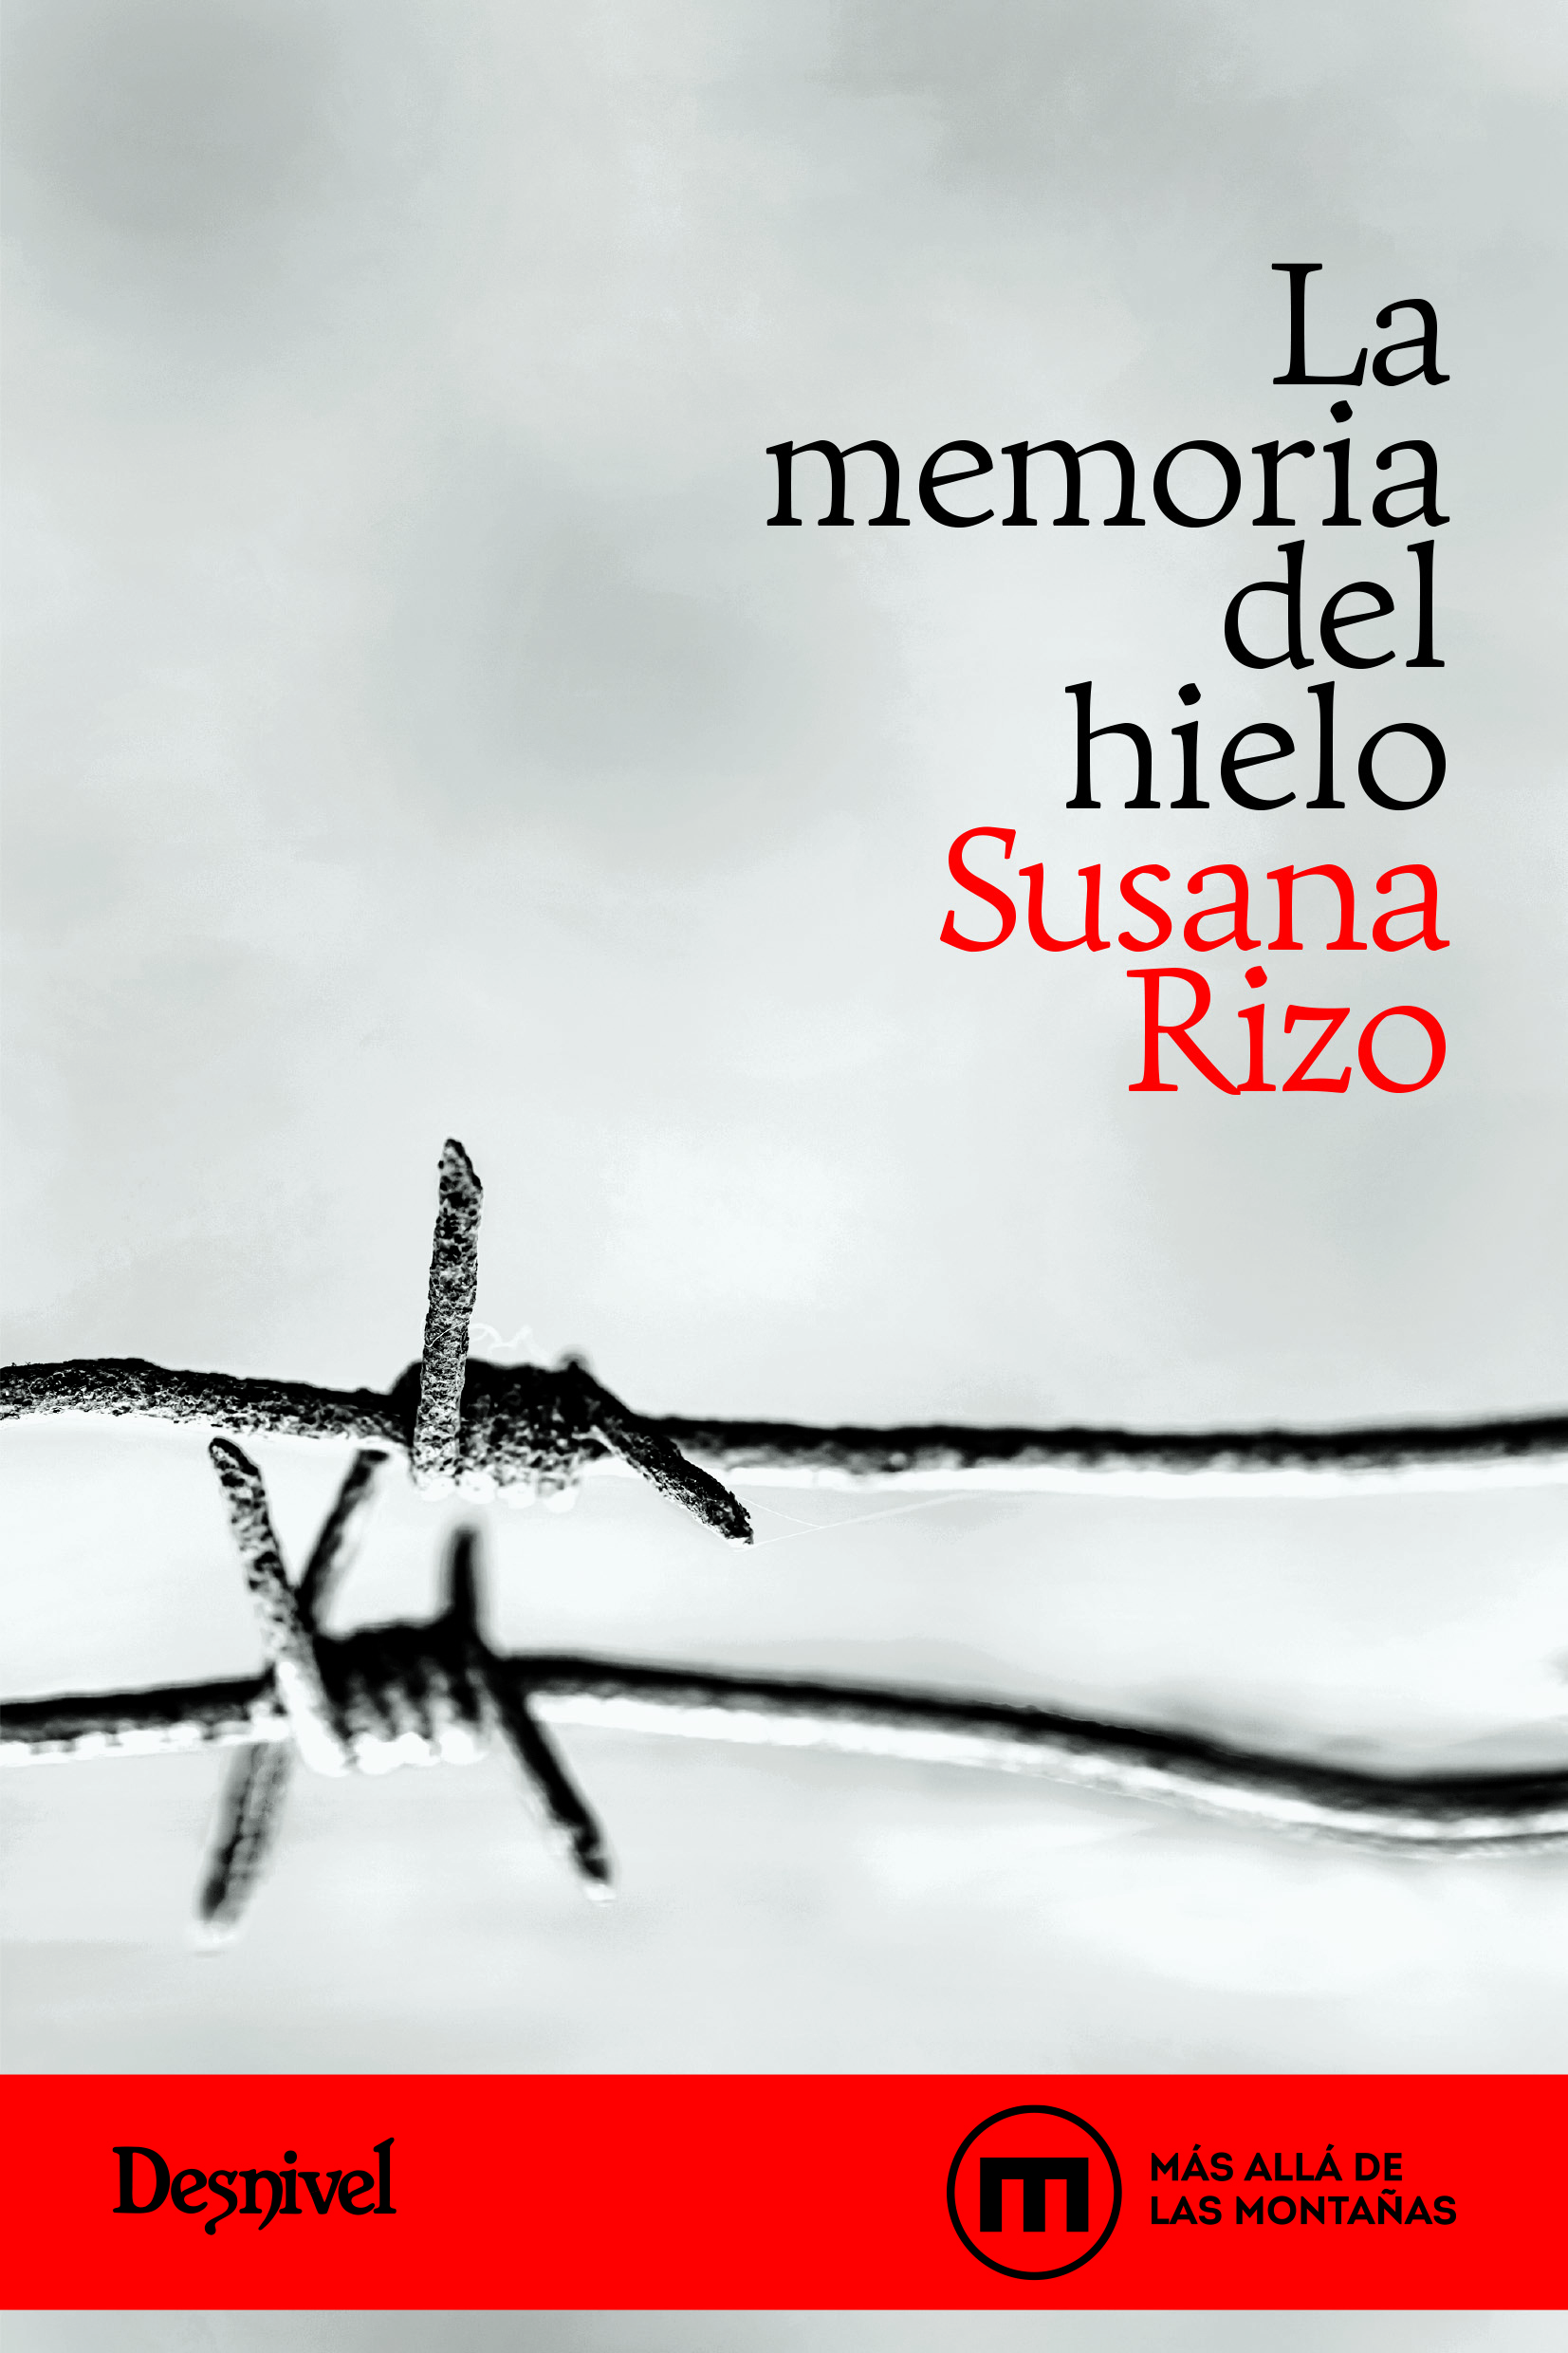 La memoria del hielo, de Susana Rizo